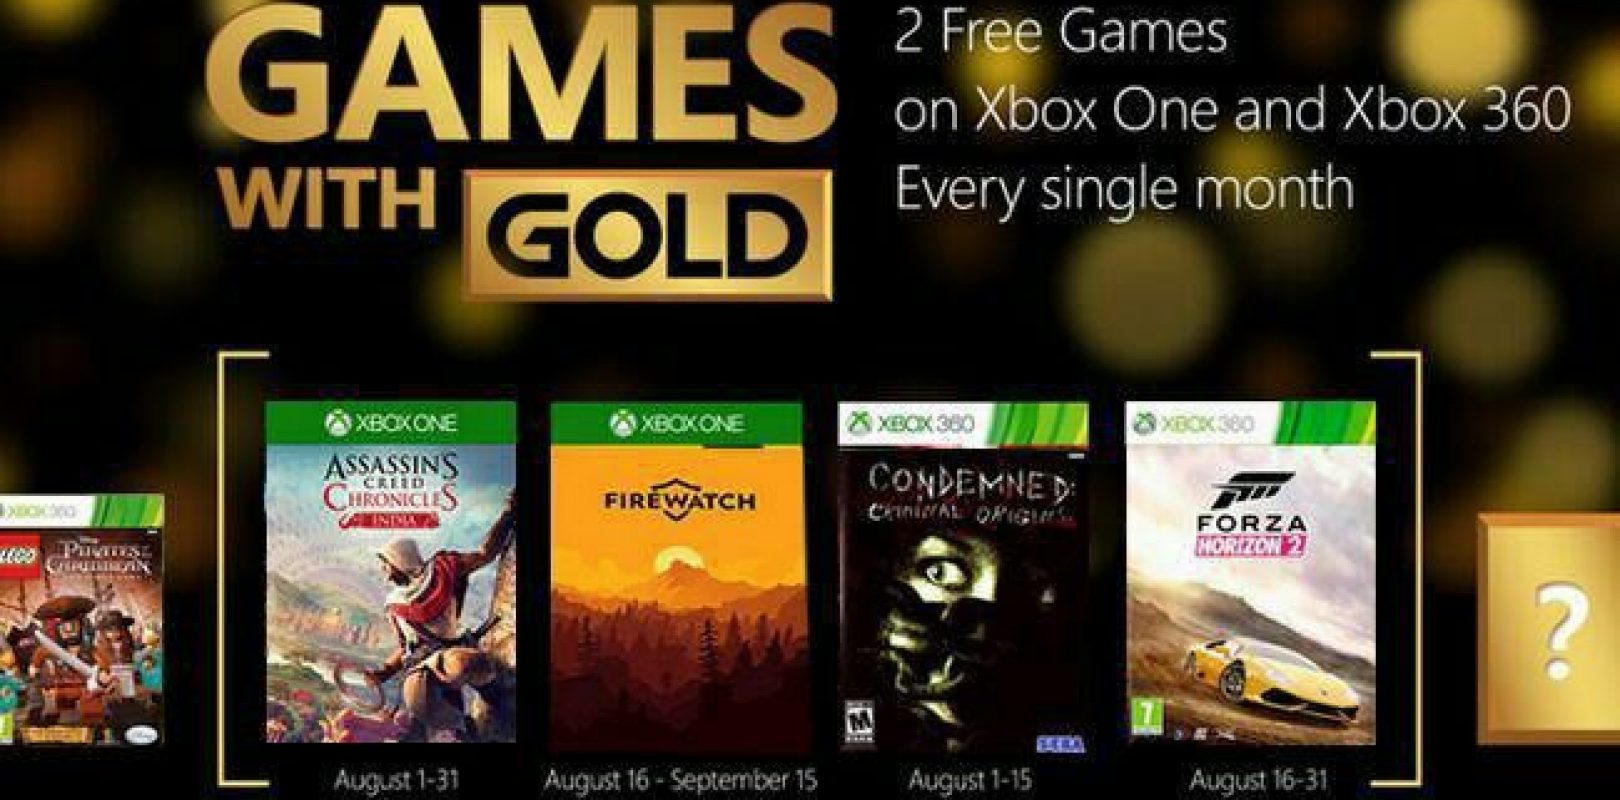 Xbox бесплатные игры без подписки. Xbox Live игры. Games with Gold. Хбох лайв Голд игры.